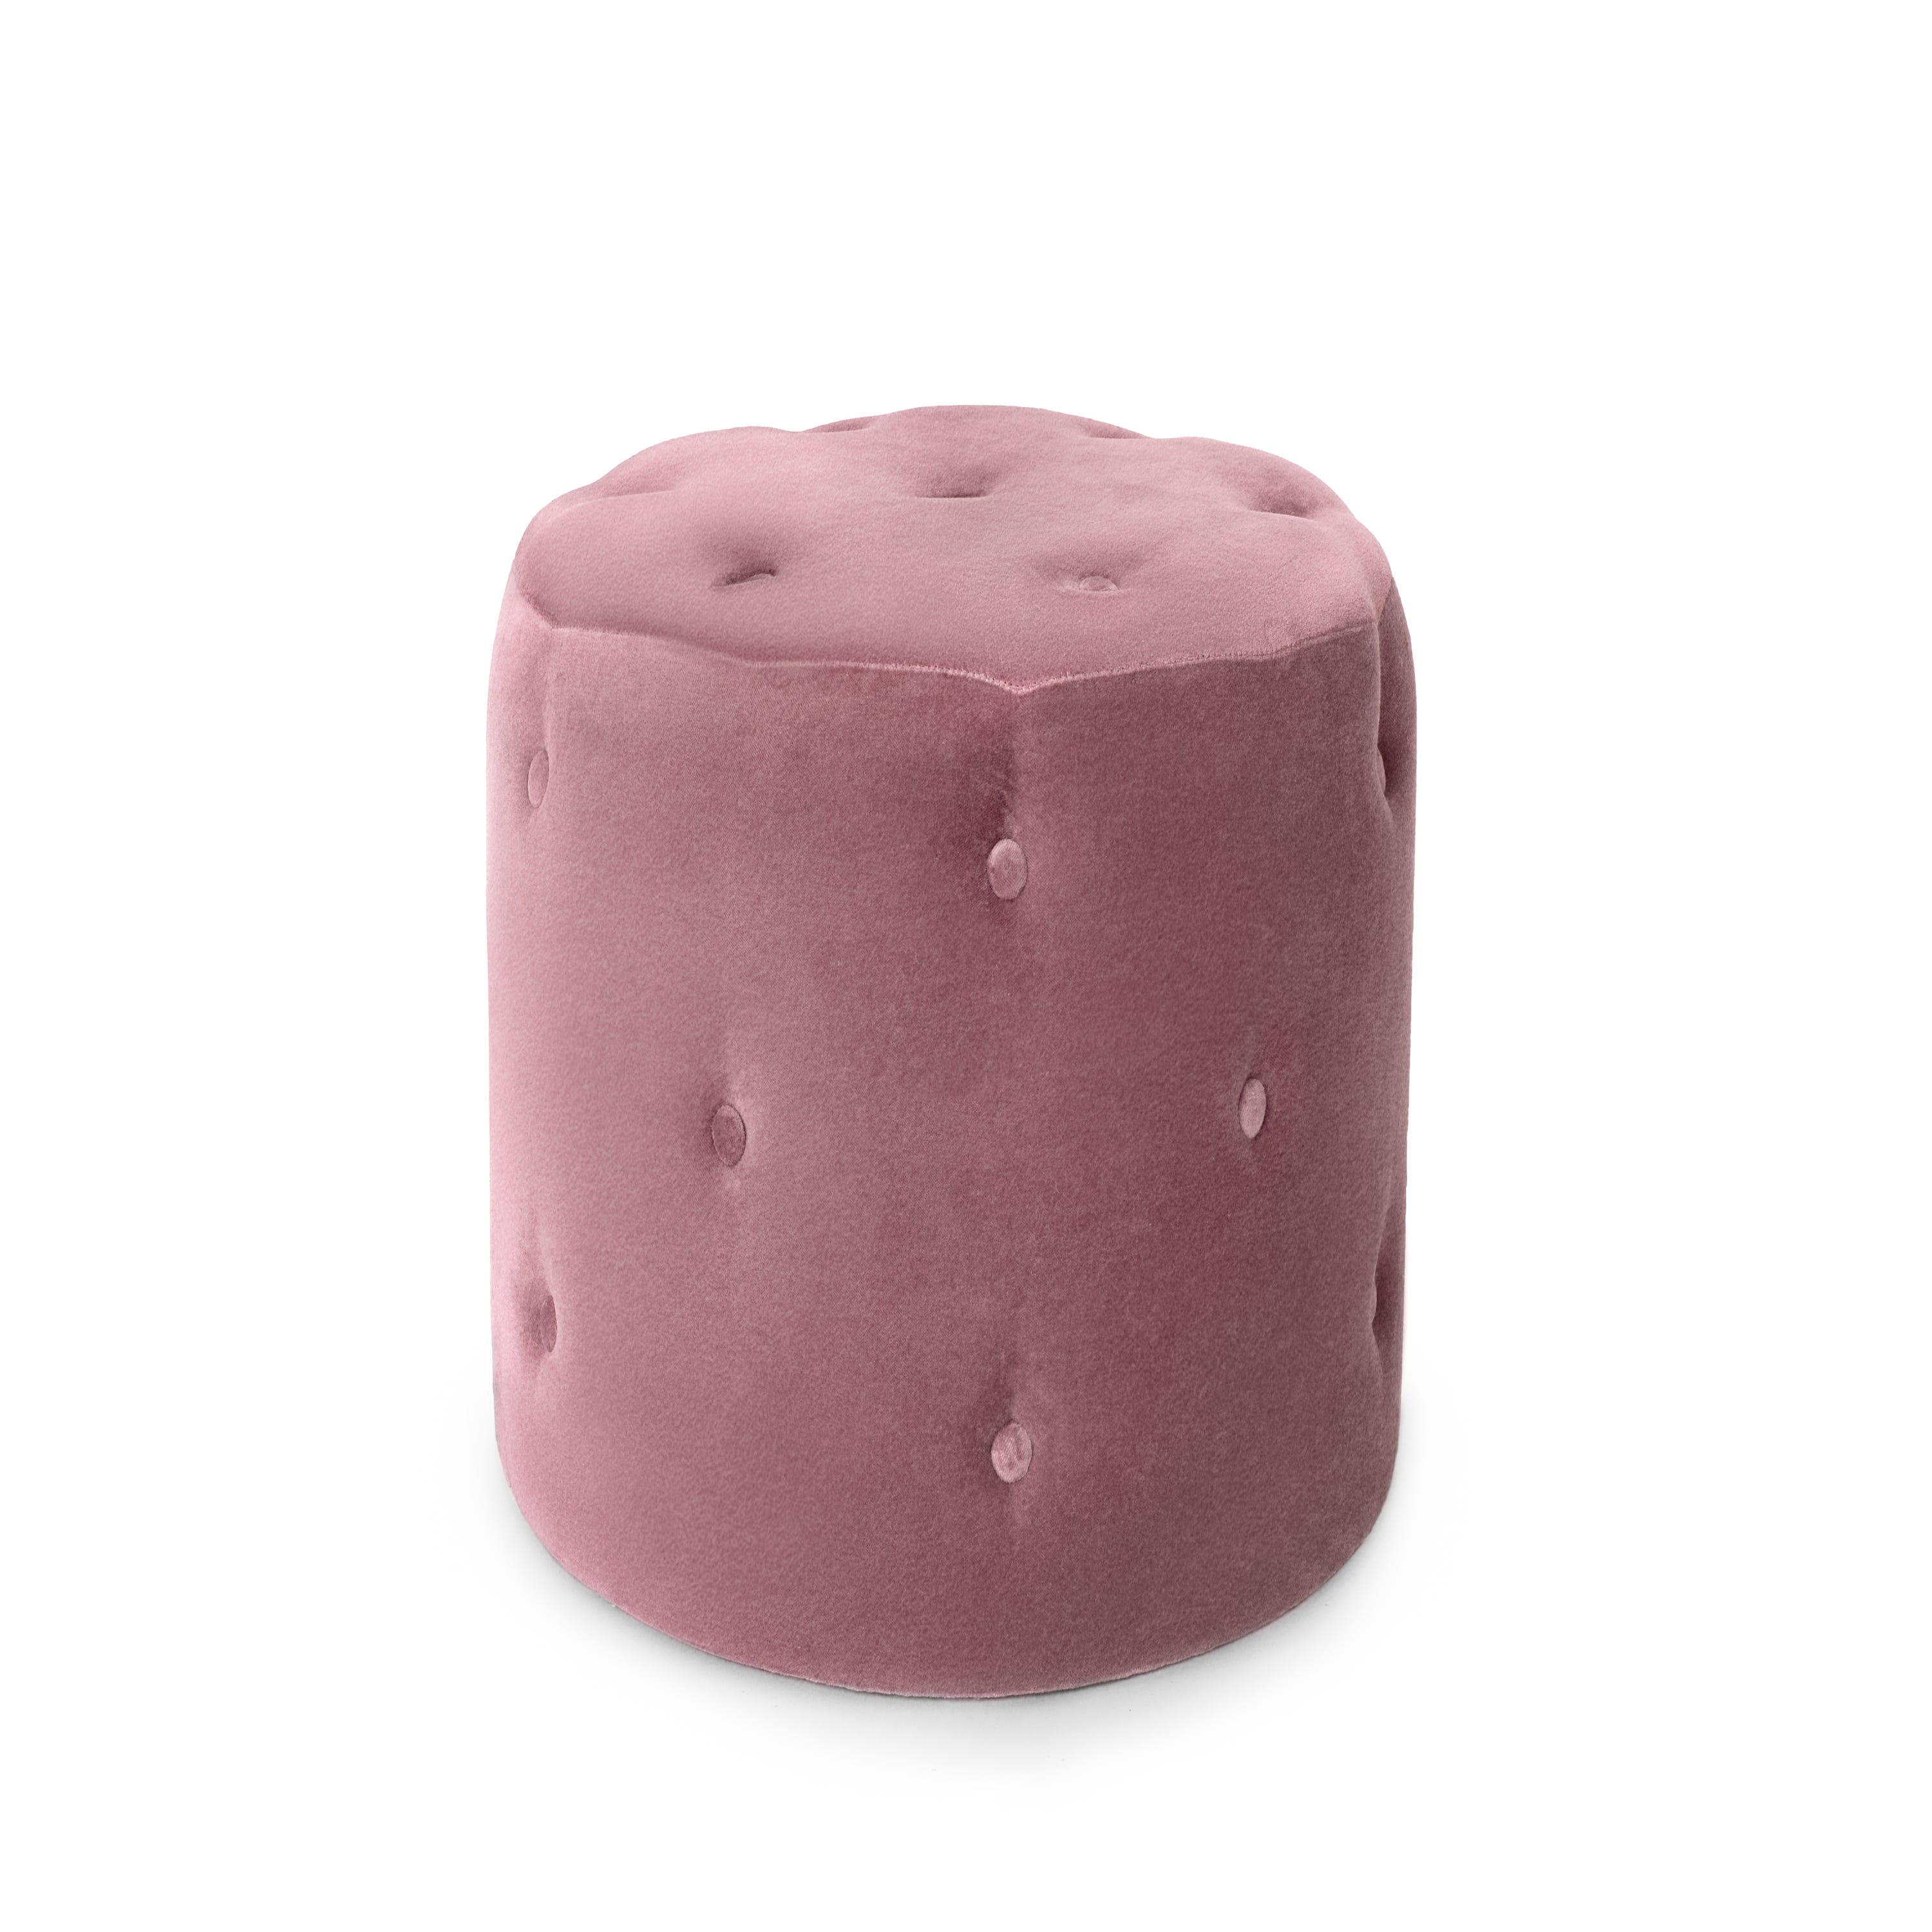 Puff redondo adaptable fabricado de poliéster con un acabado de color rosa  Forme